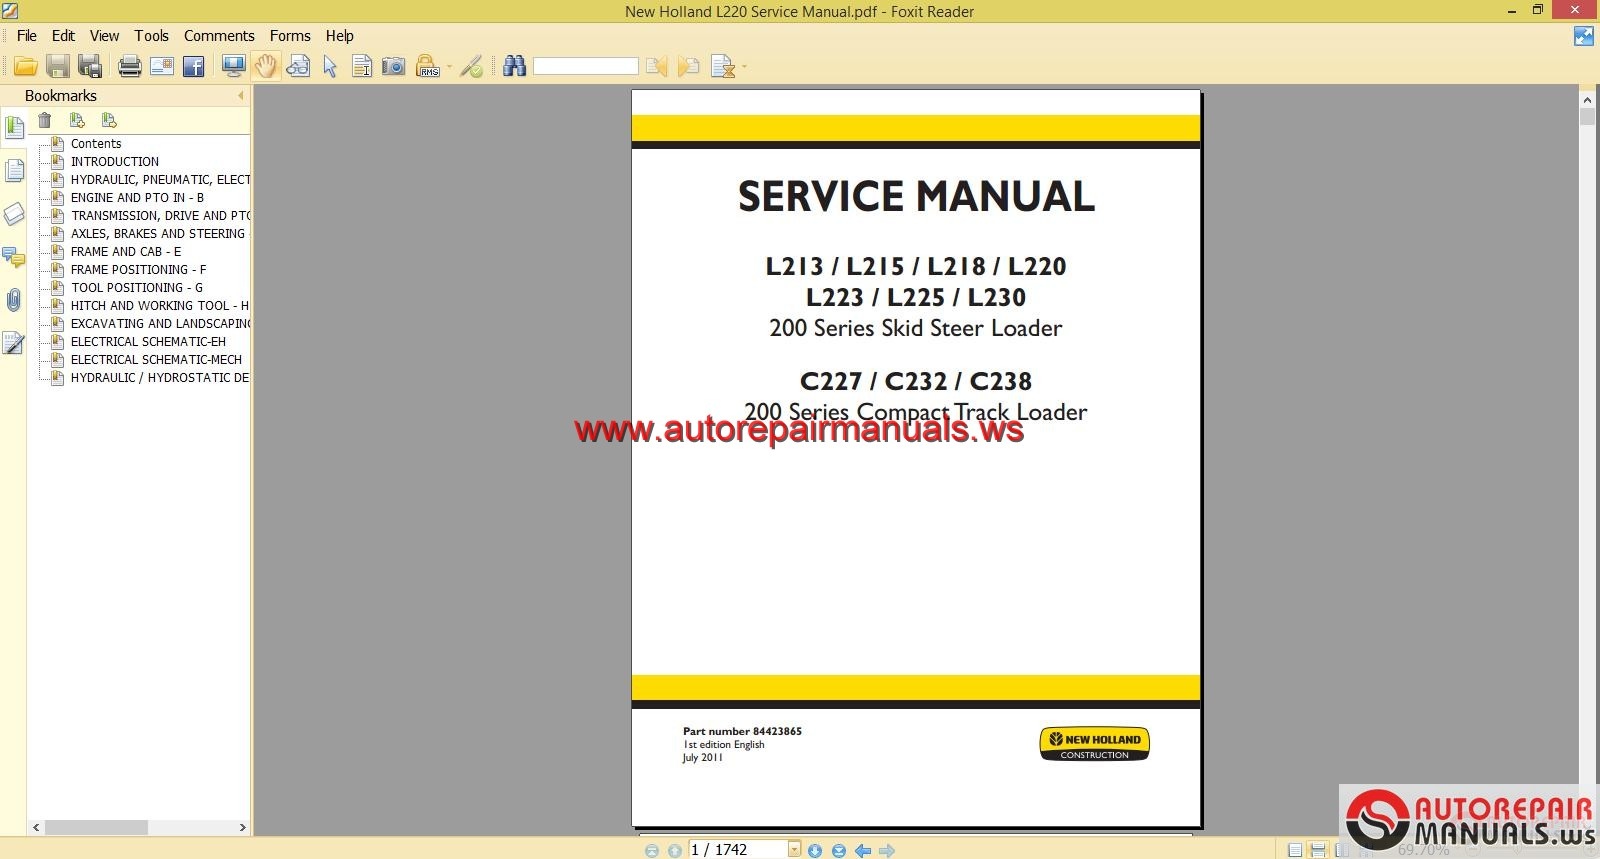 ... manual New Holland L220 Service Manual | Auto Repair Manual Forum